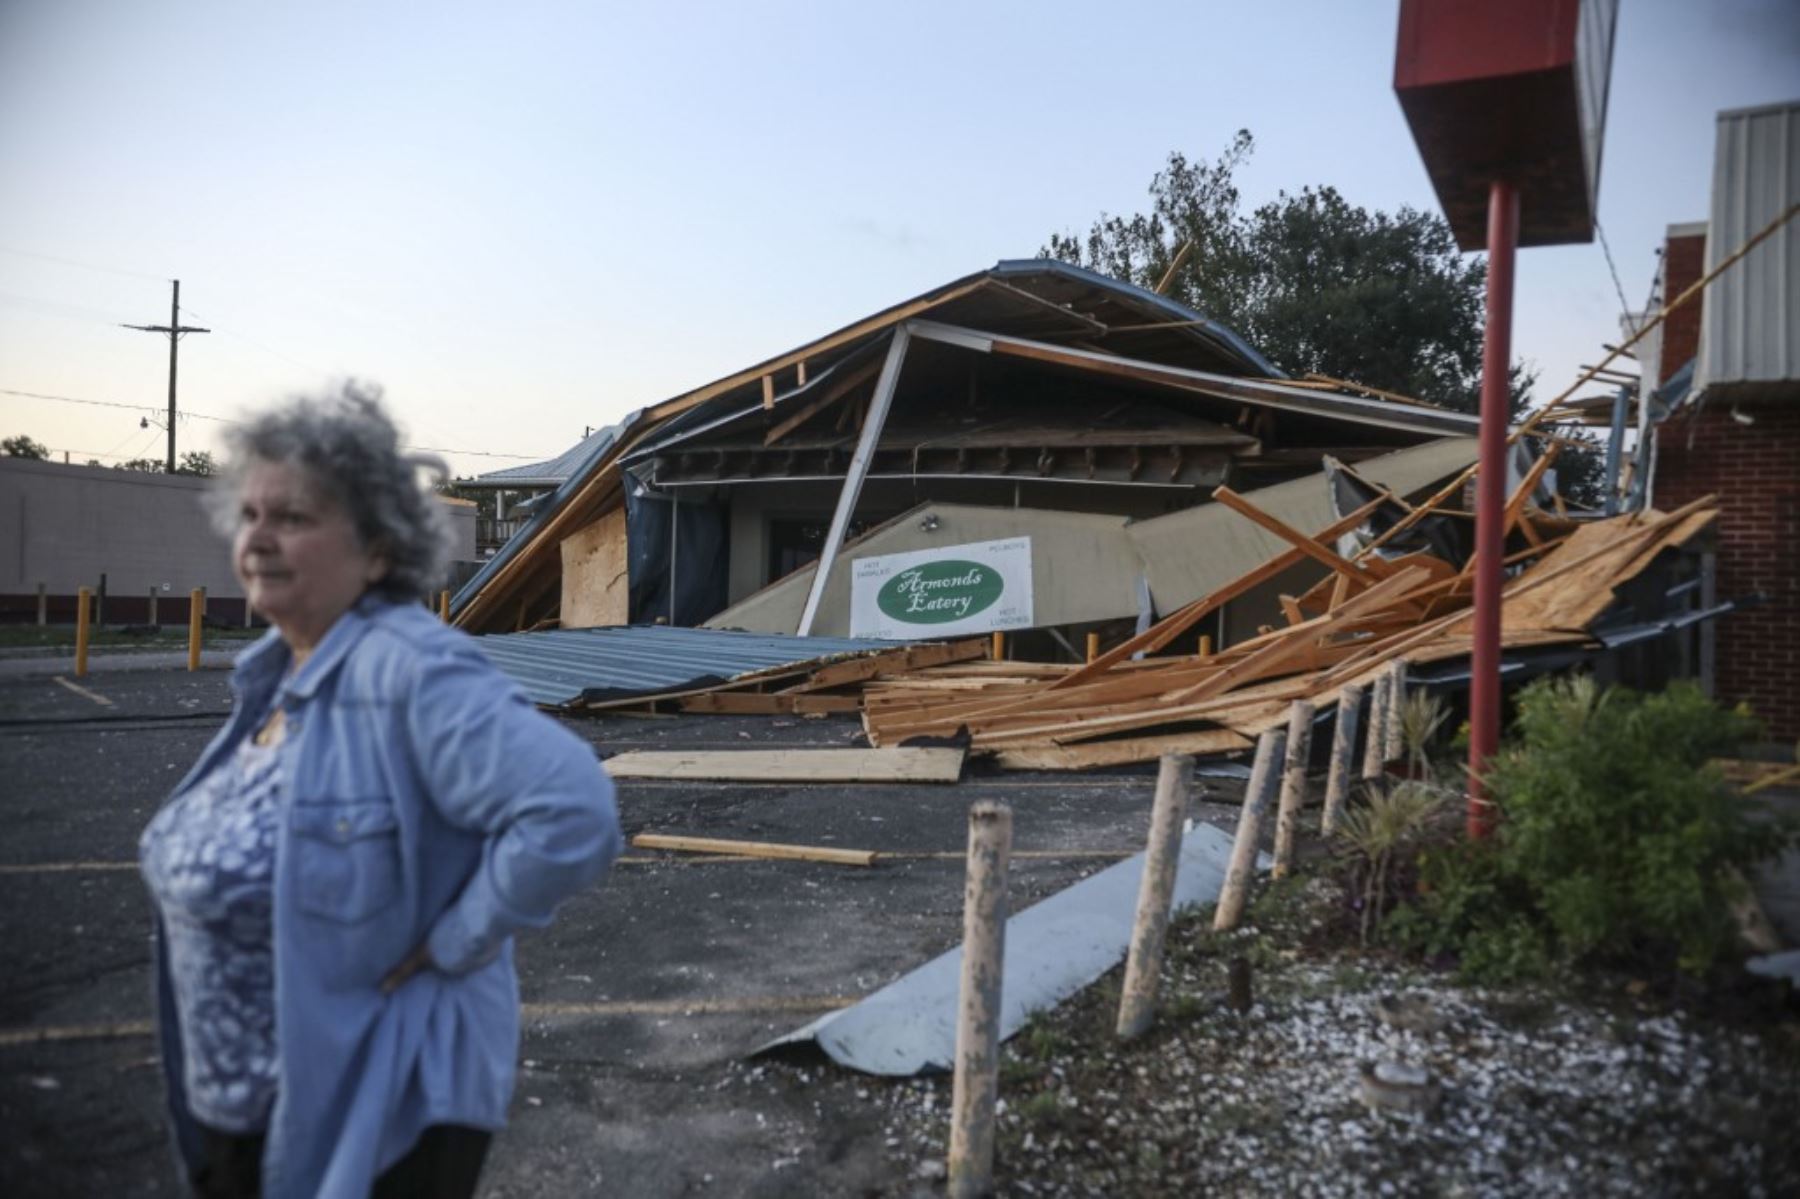 Una mujer se para frente a un restaurante destruido después del huracán Zeta, en Chalmette Luisiana. Foto:AFP